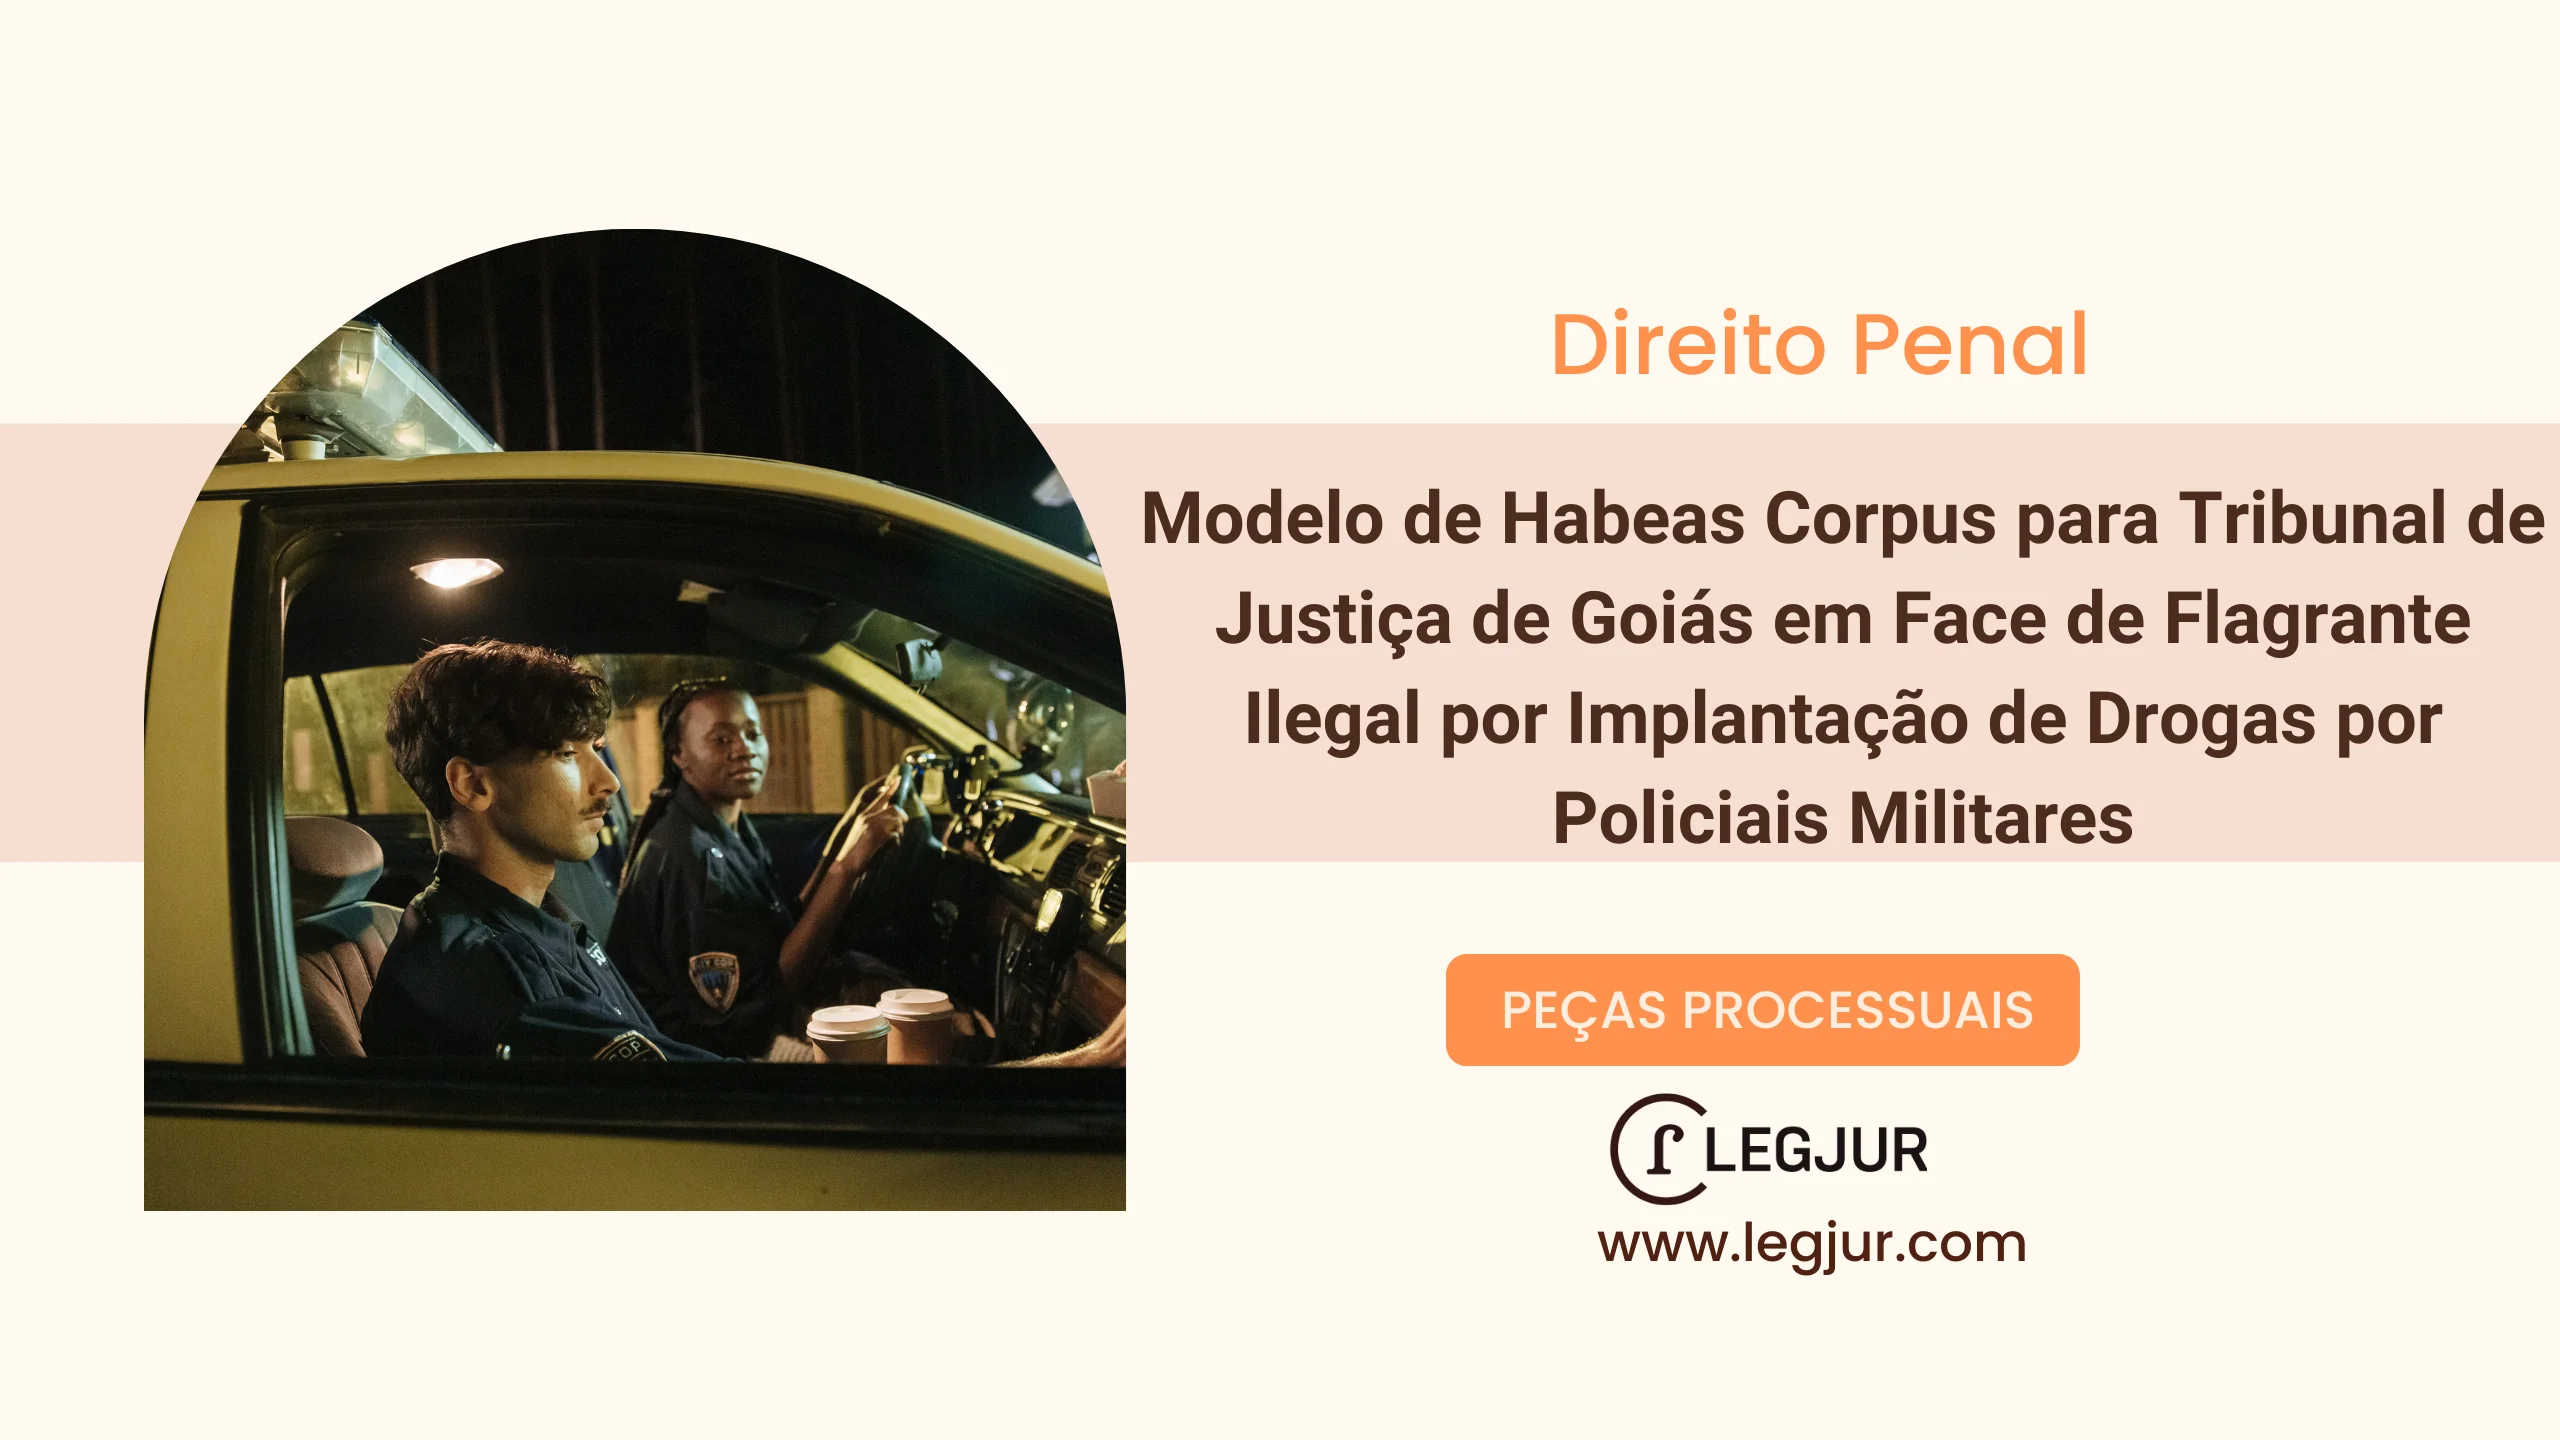 Modelo de Habeas Corpus para Tribunal de Justiça de Goiás em Face de Flagrante Ilegal por Implantação de Drogas por Policiais Militares